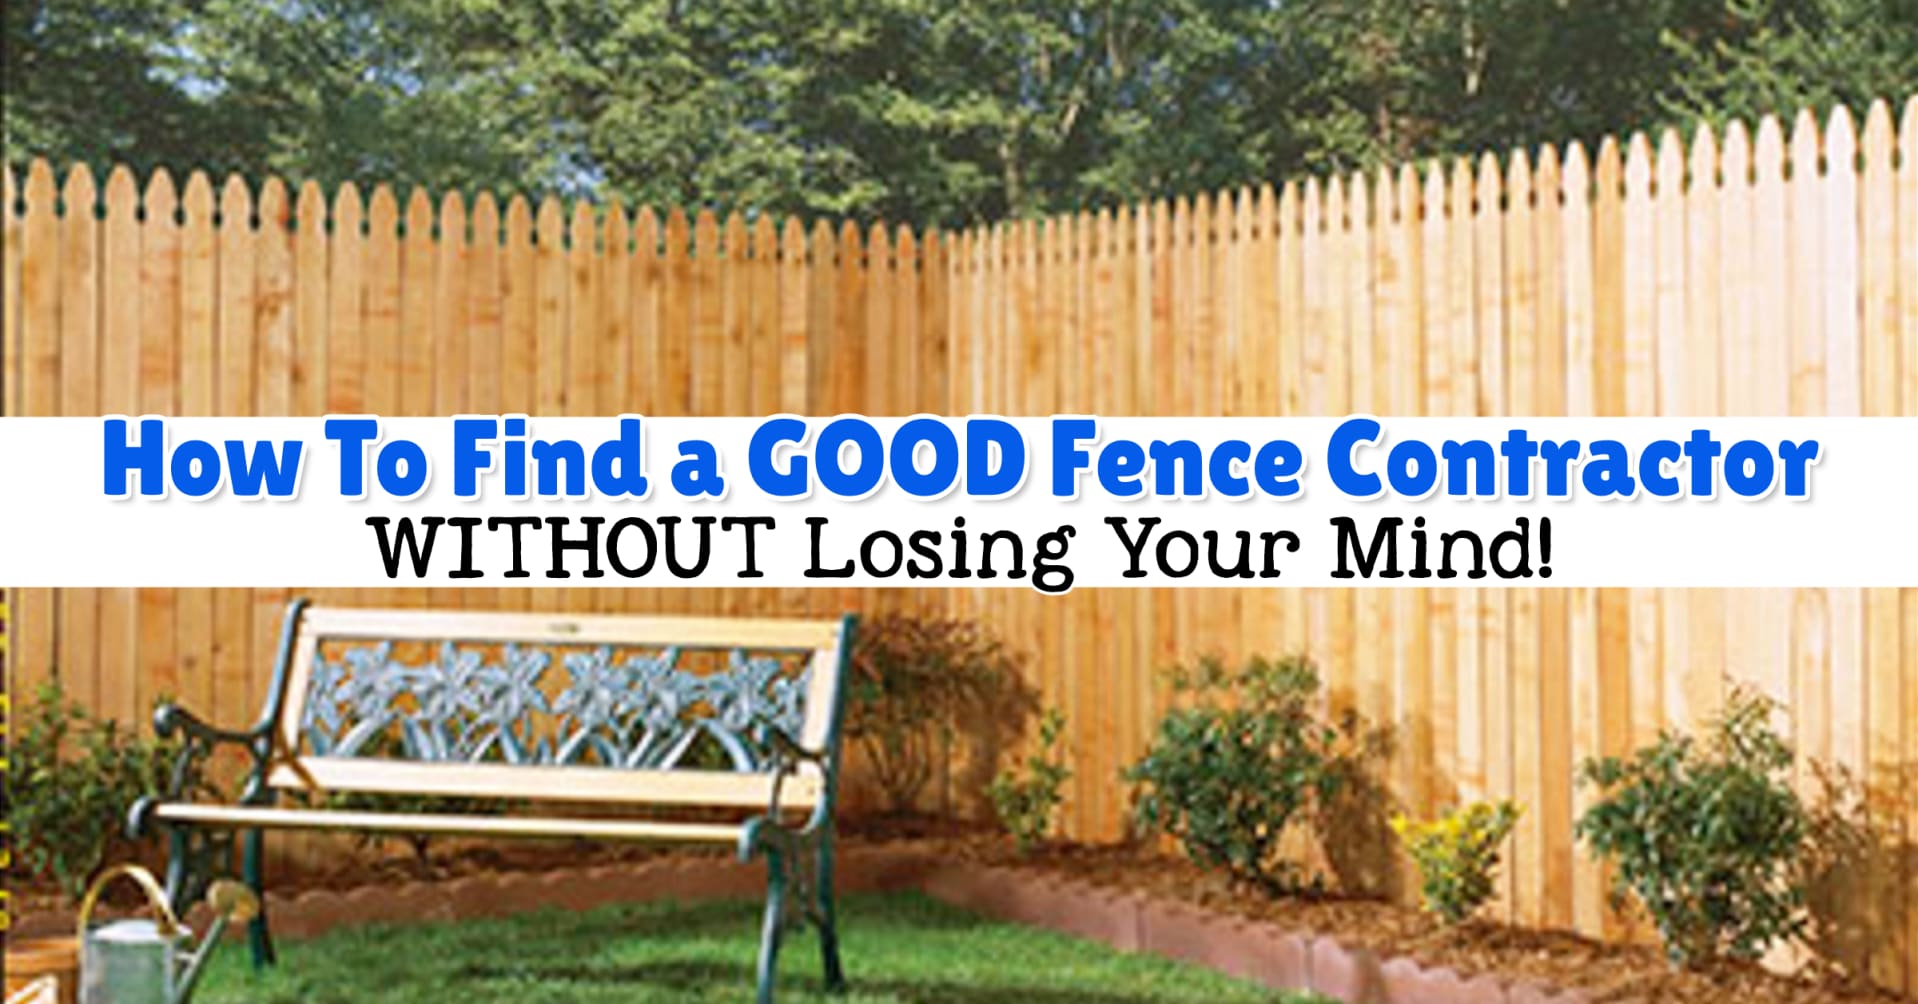 Pasdena Fence Company